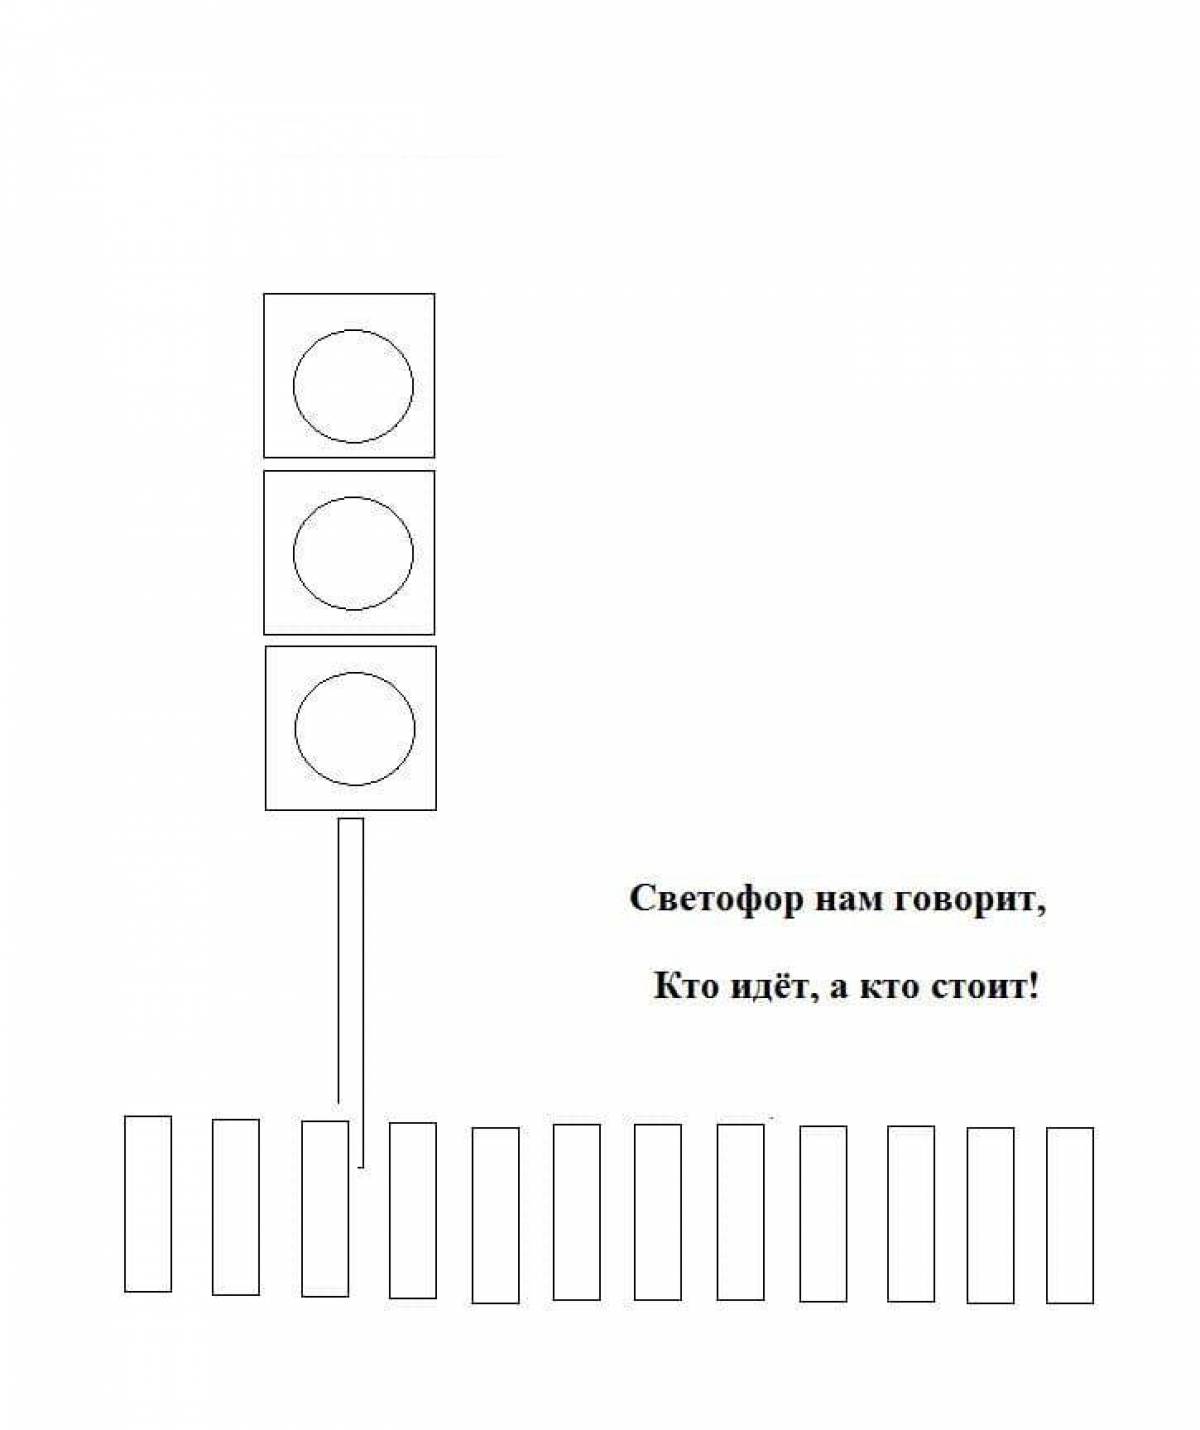 Traffic light for kids #14